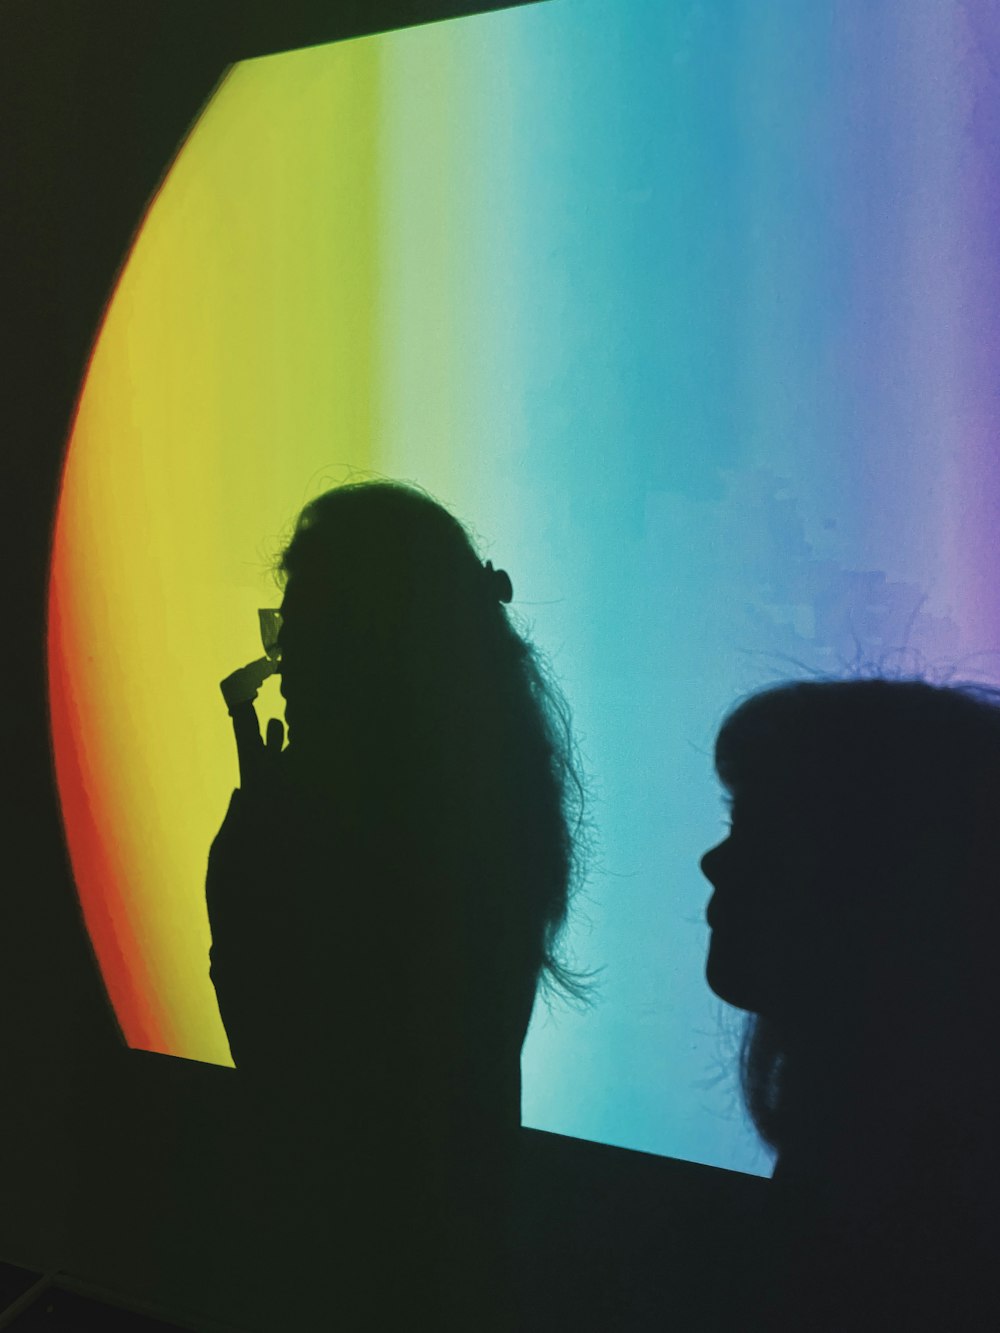 Una mujer parada frente a una pared de colores del arco iris